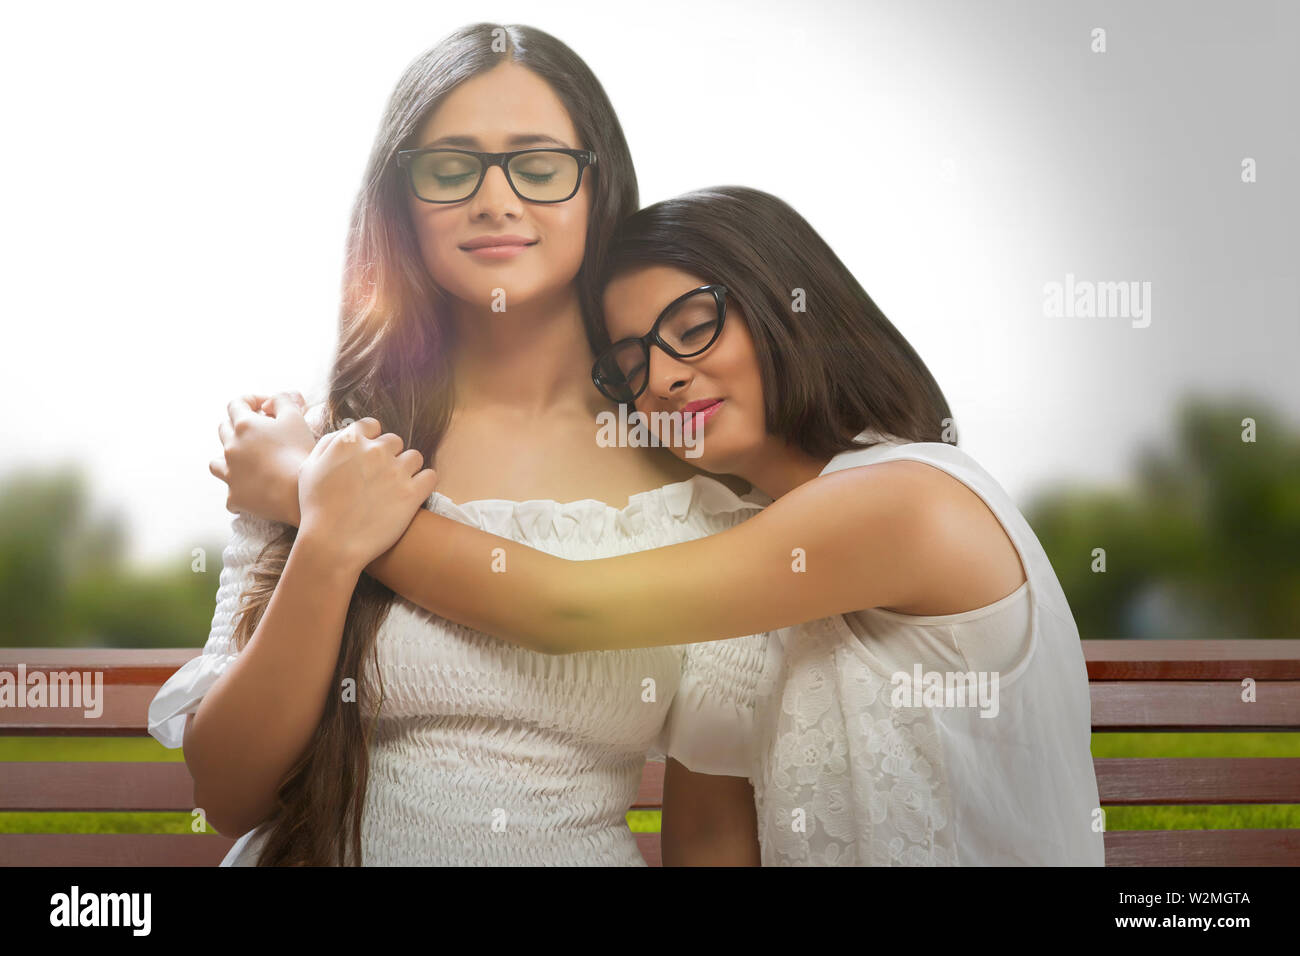 Jeune fille à lunettes, debout avec son ami avec ses bras autour d'elle et la tête reposant sur l'épaule et les yeux fermés. Banque D'Images